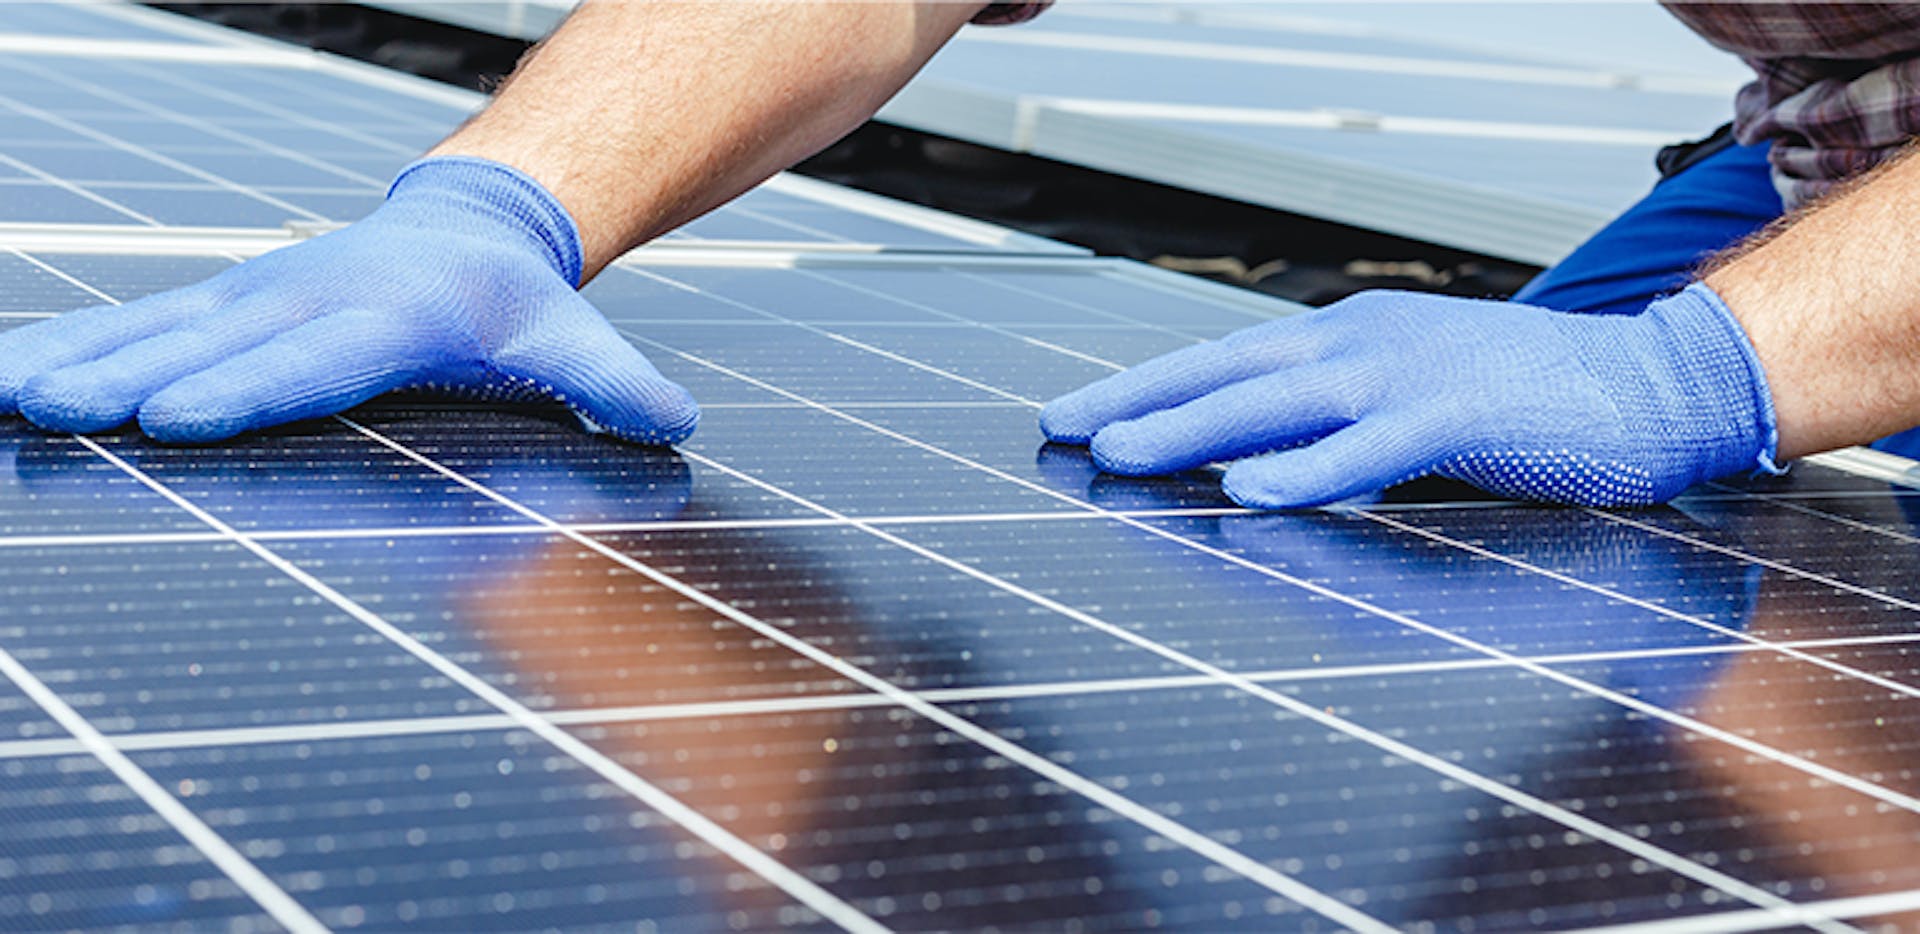 Panneaux solaires photovoltaïques : définition, fonctionnement